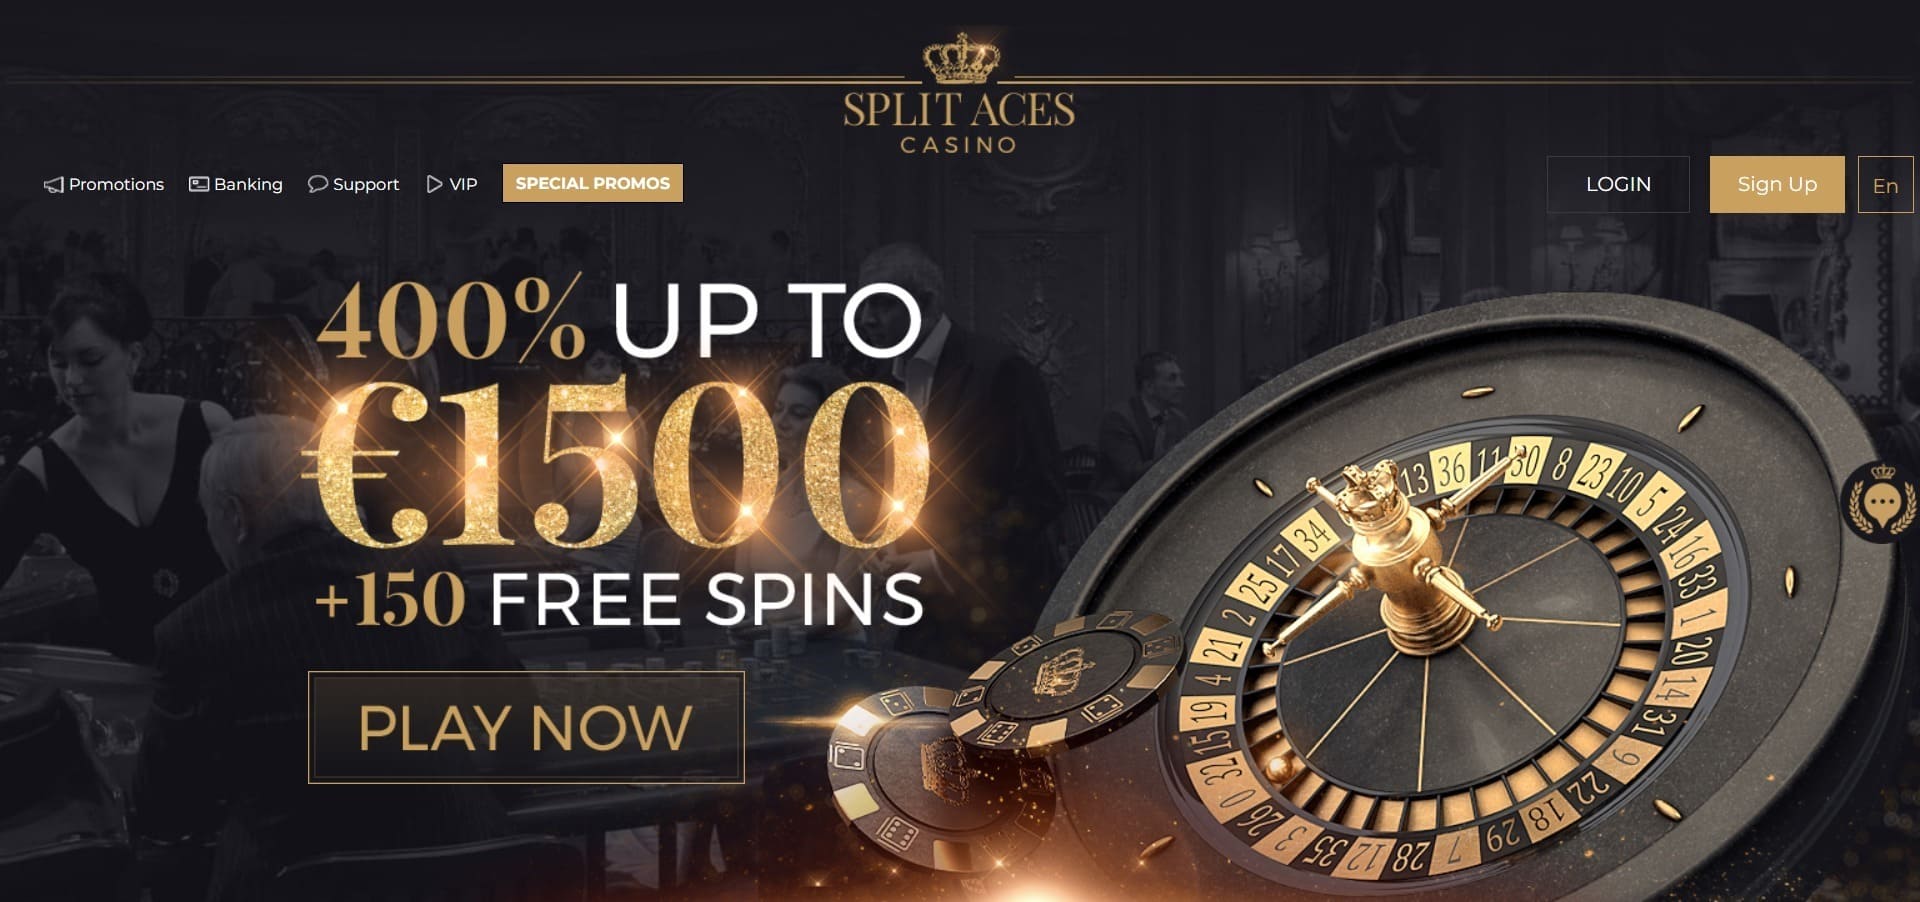 Officiële website van het Split Aces Casino